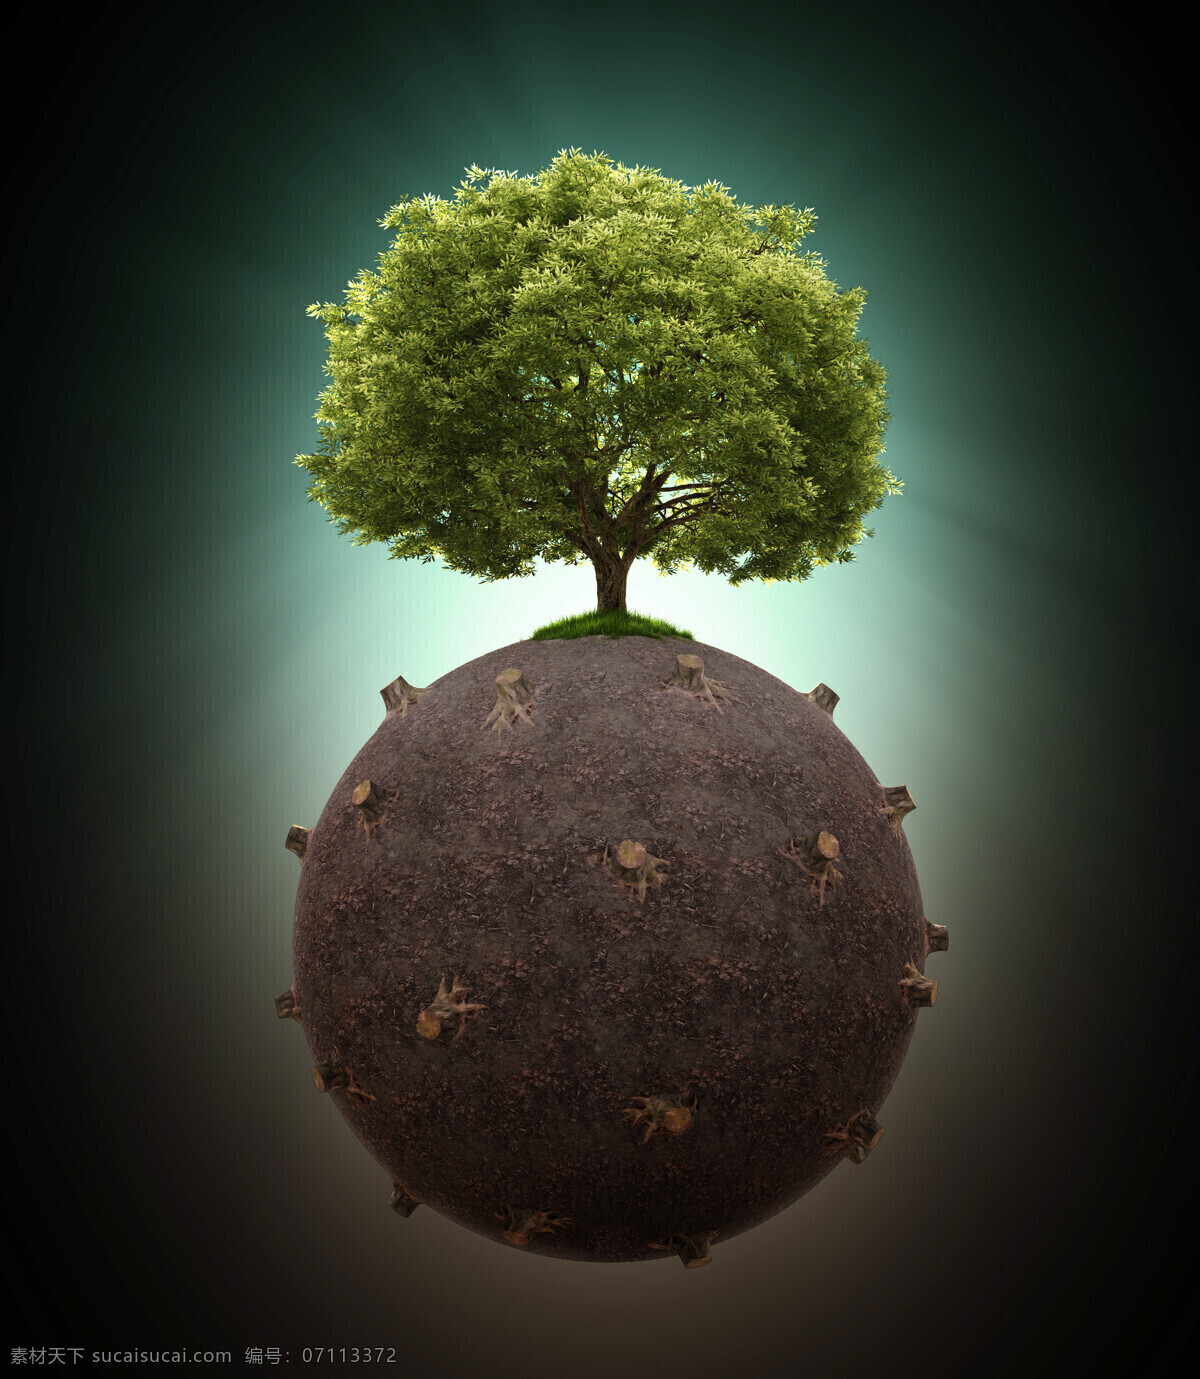 创意 环保 概念 地球保护 树木 树桩 绿色环保 生态环保 节能环保 其他类别 生活百科